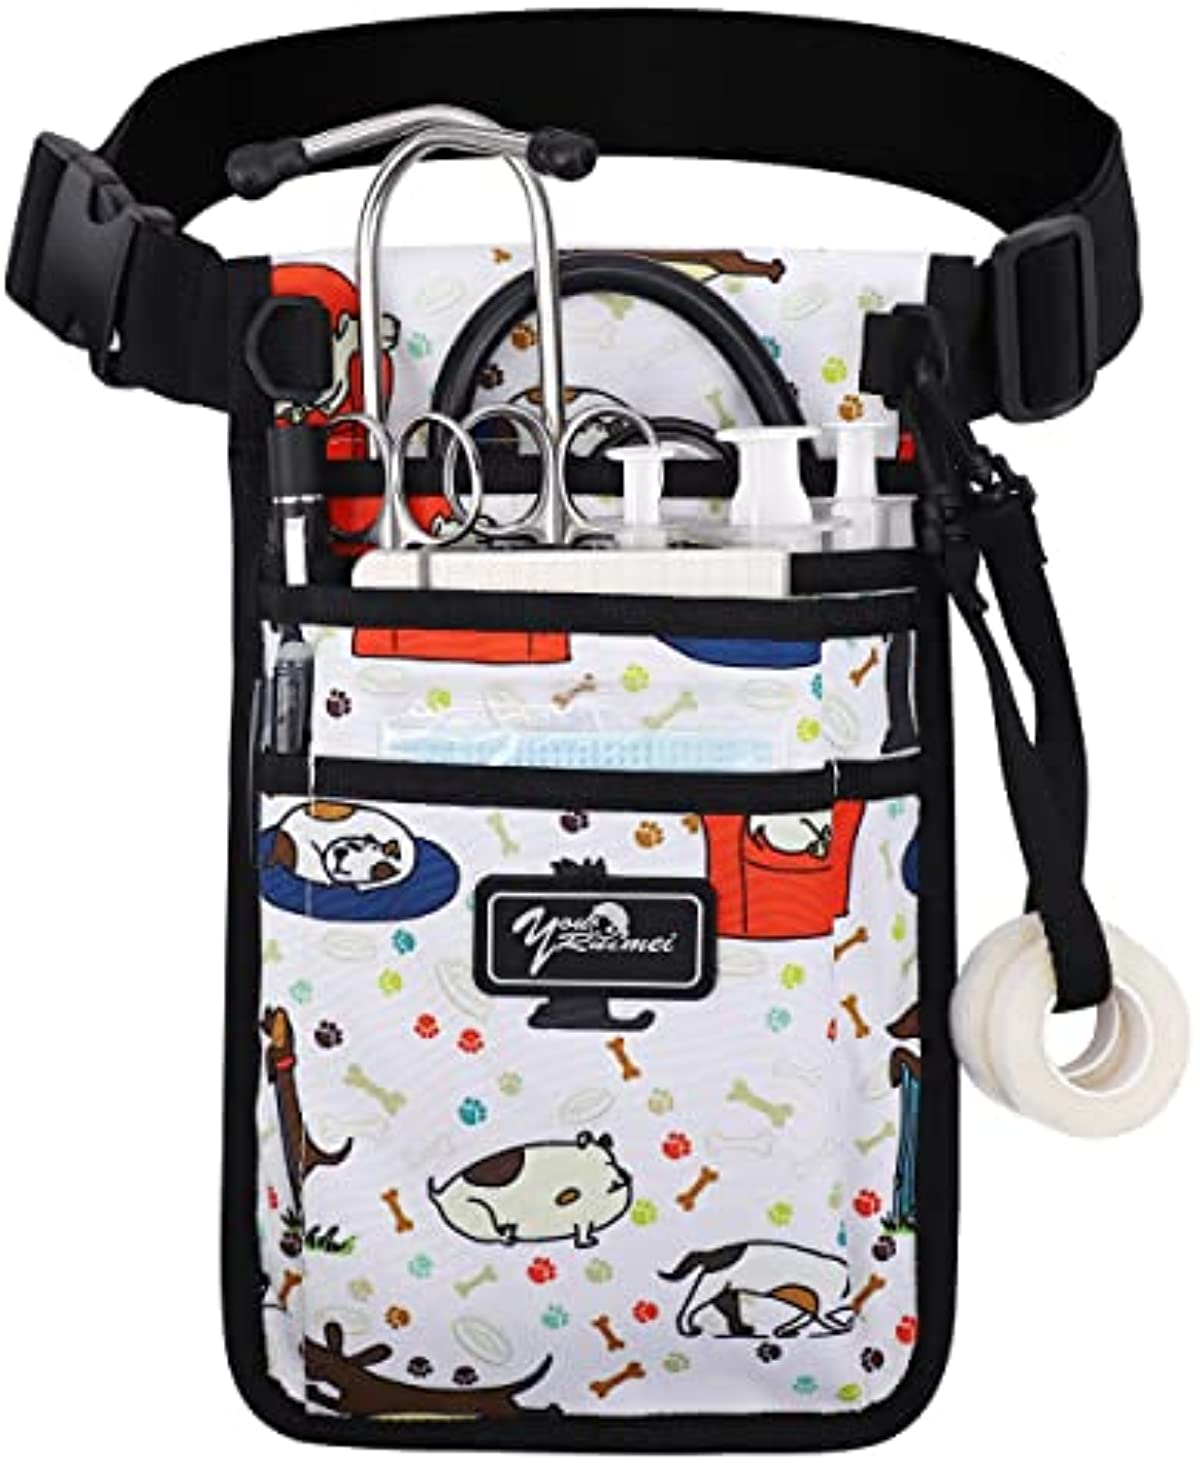 Nurse Fanny Pack for Work,Kit Practical Waist Bag for Nurses,Fanny Pack for Basics,Nurse Utility Belt Organizer Bag (M-Color22XG)